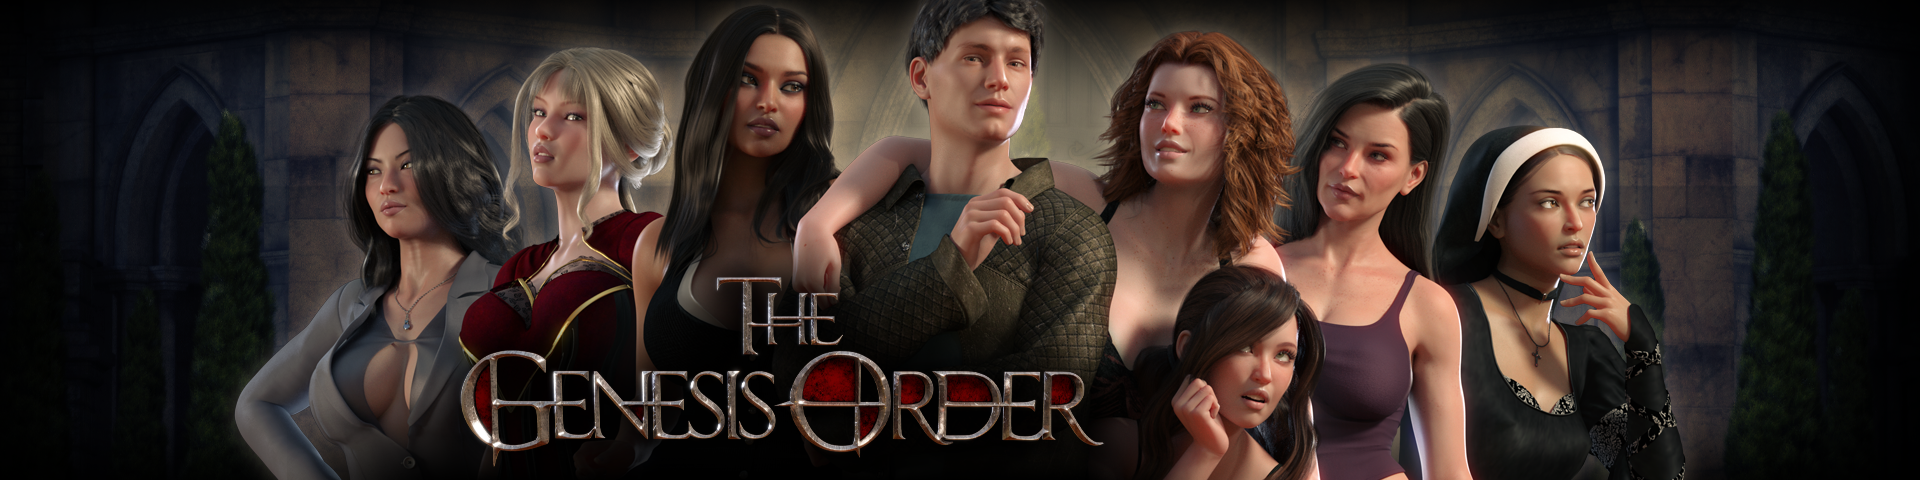 The genesis order new update